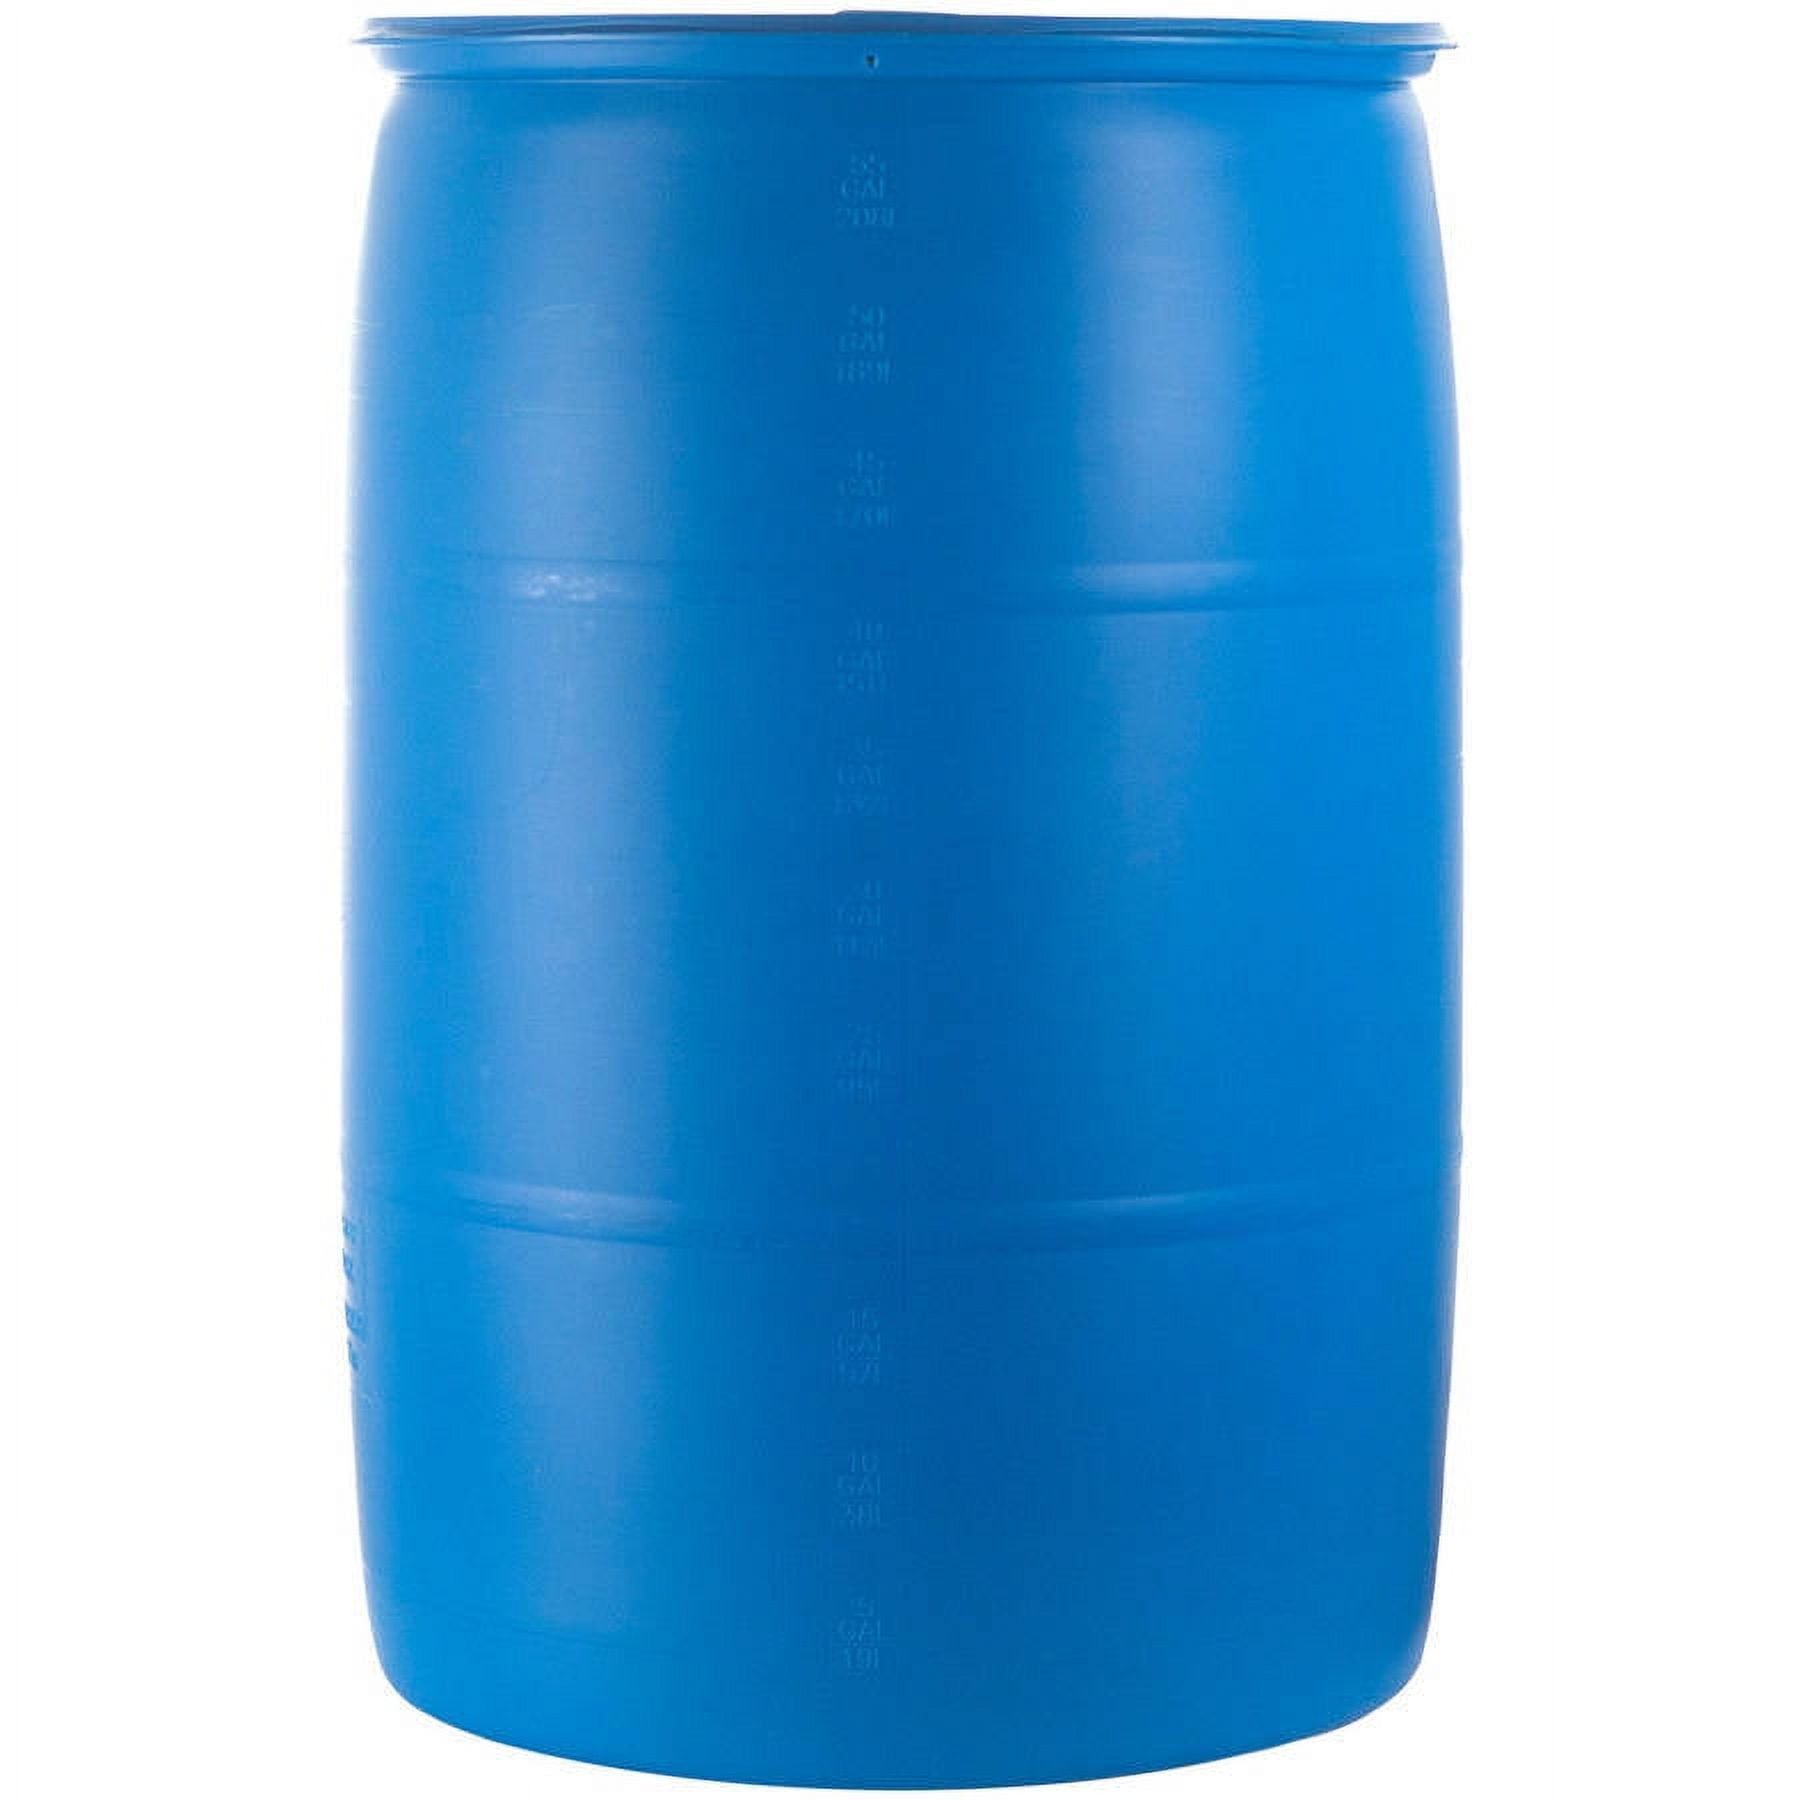 Emergency Essentials 55 Gal. Water Barrel